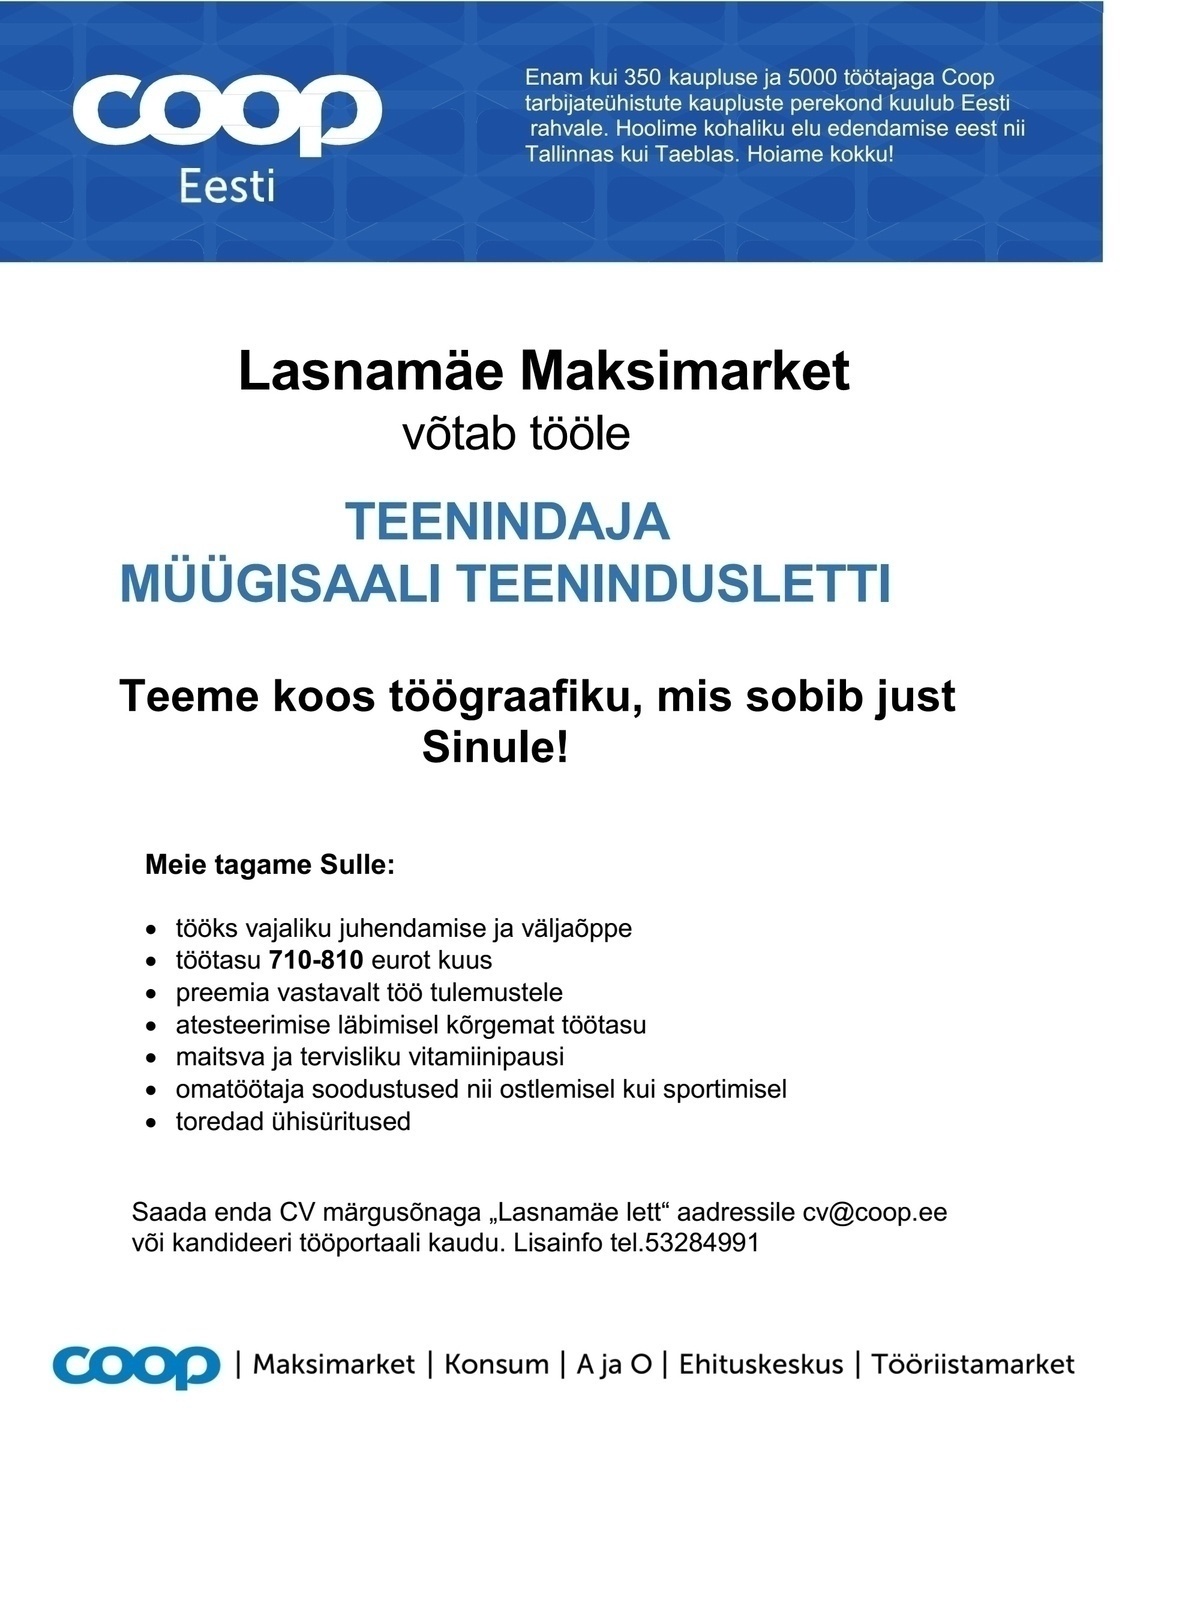 Coop Kaubanduse AS Teenindaja teenindusletis (Lasnamäe Maksimarket)